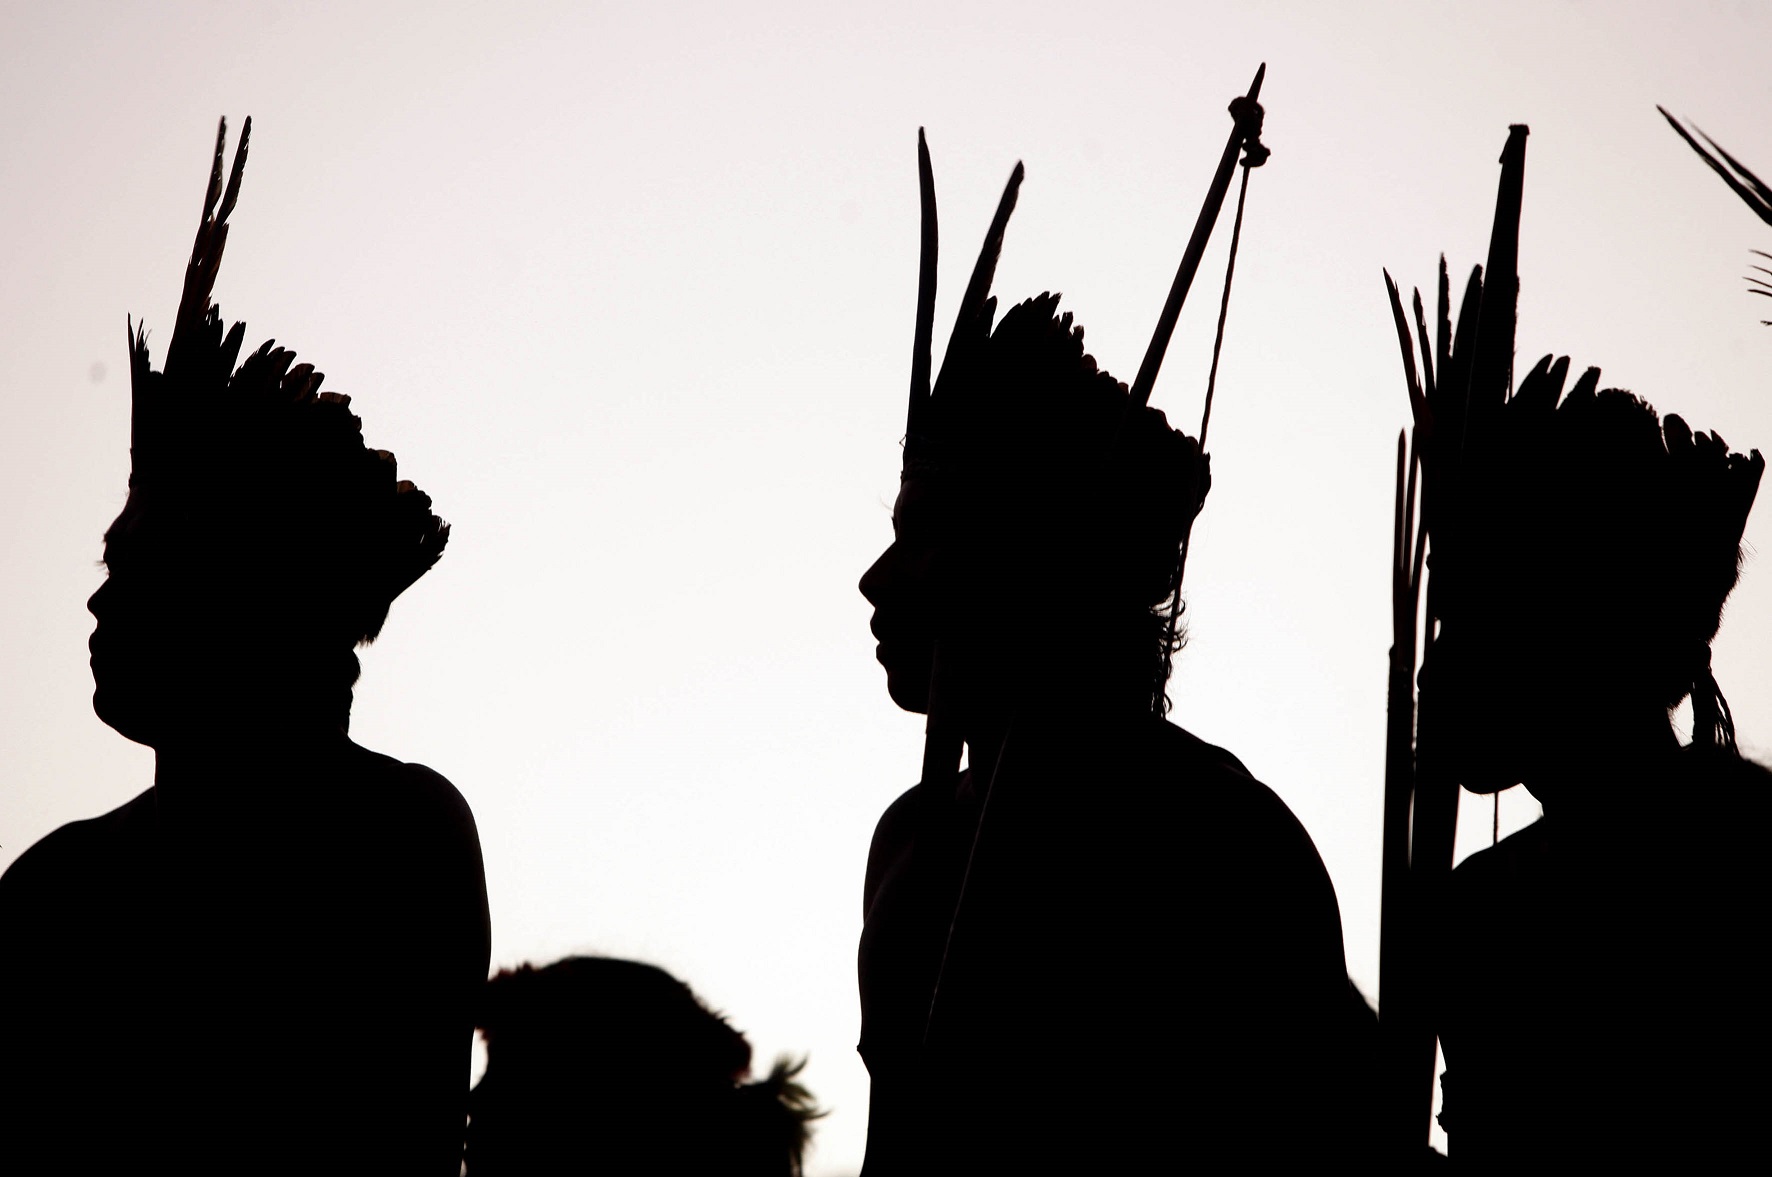 Documentos da Funai revelam ataques de óvnis a indígenas no Acre em 2014